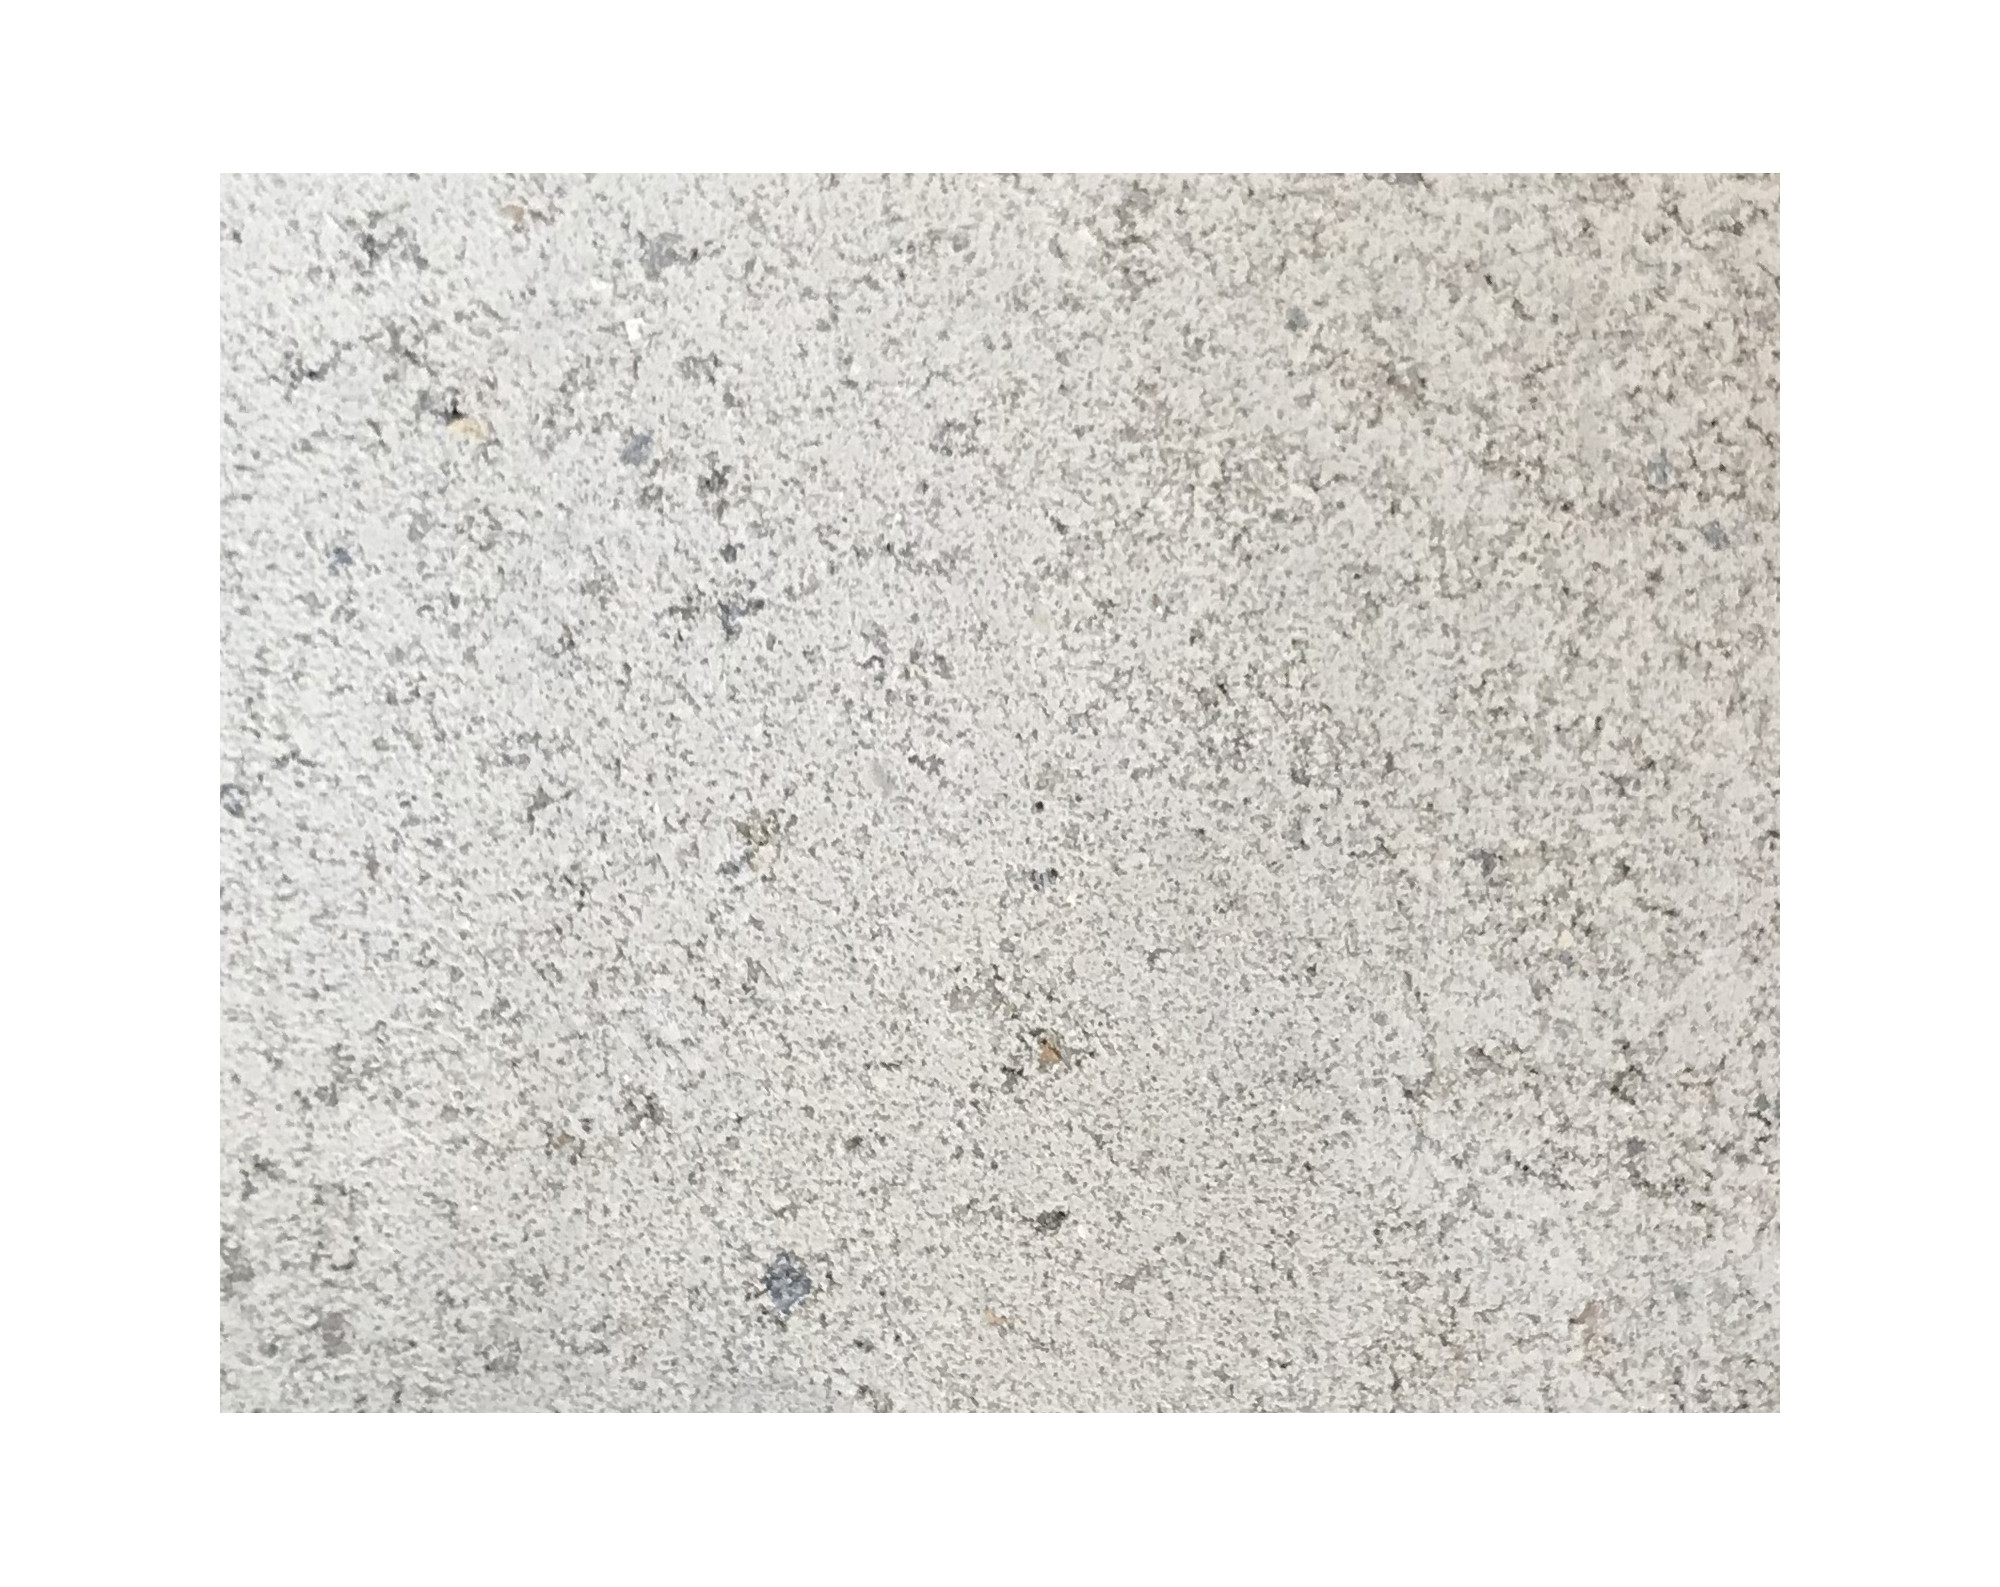 Harmo roc nevadaset, rustica-serie, 8-vormig d:6,00mx9,20m, gebroken wit, beton